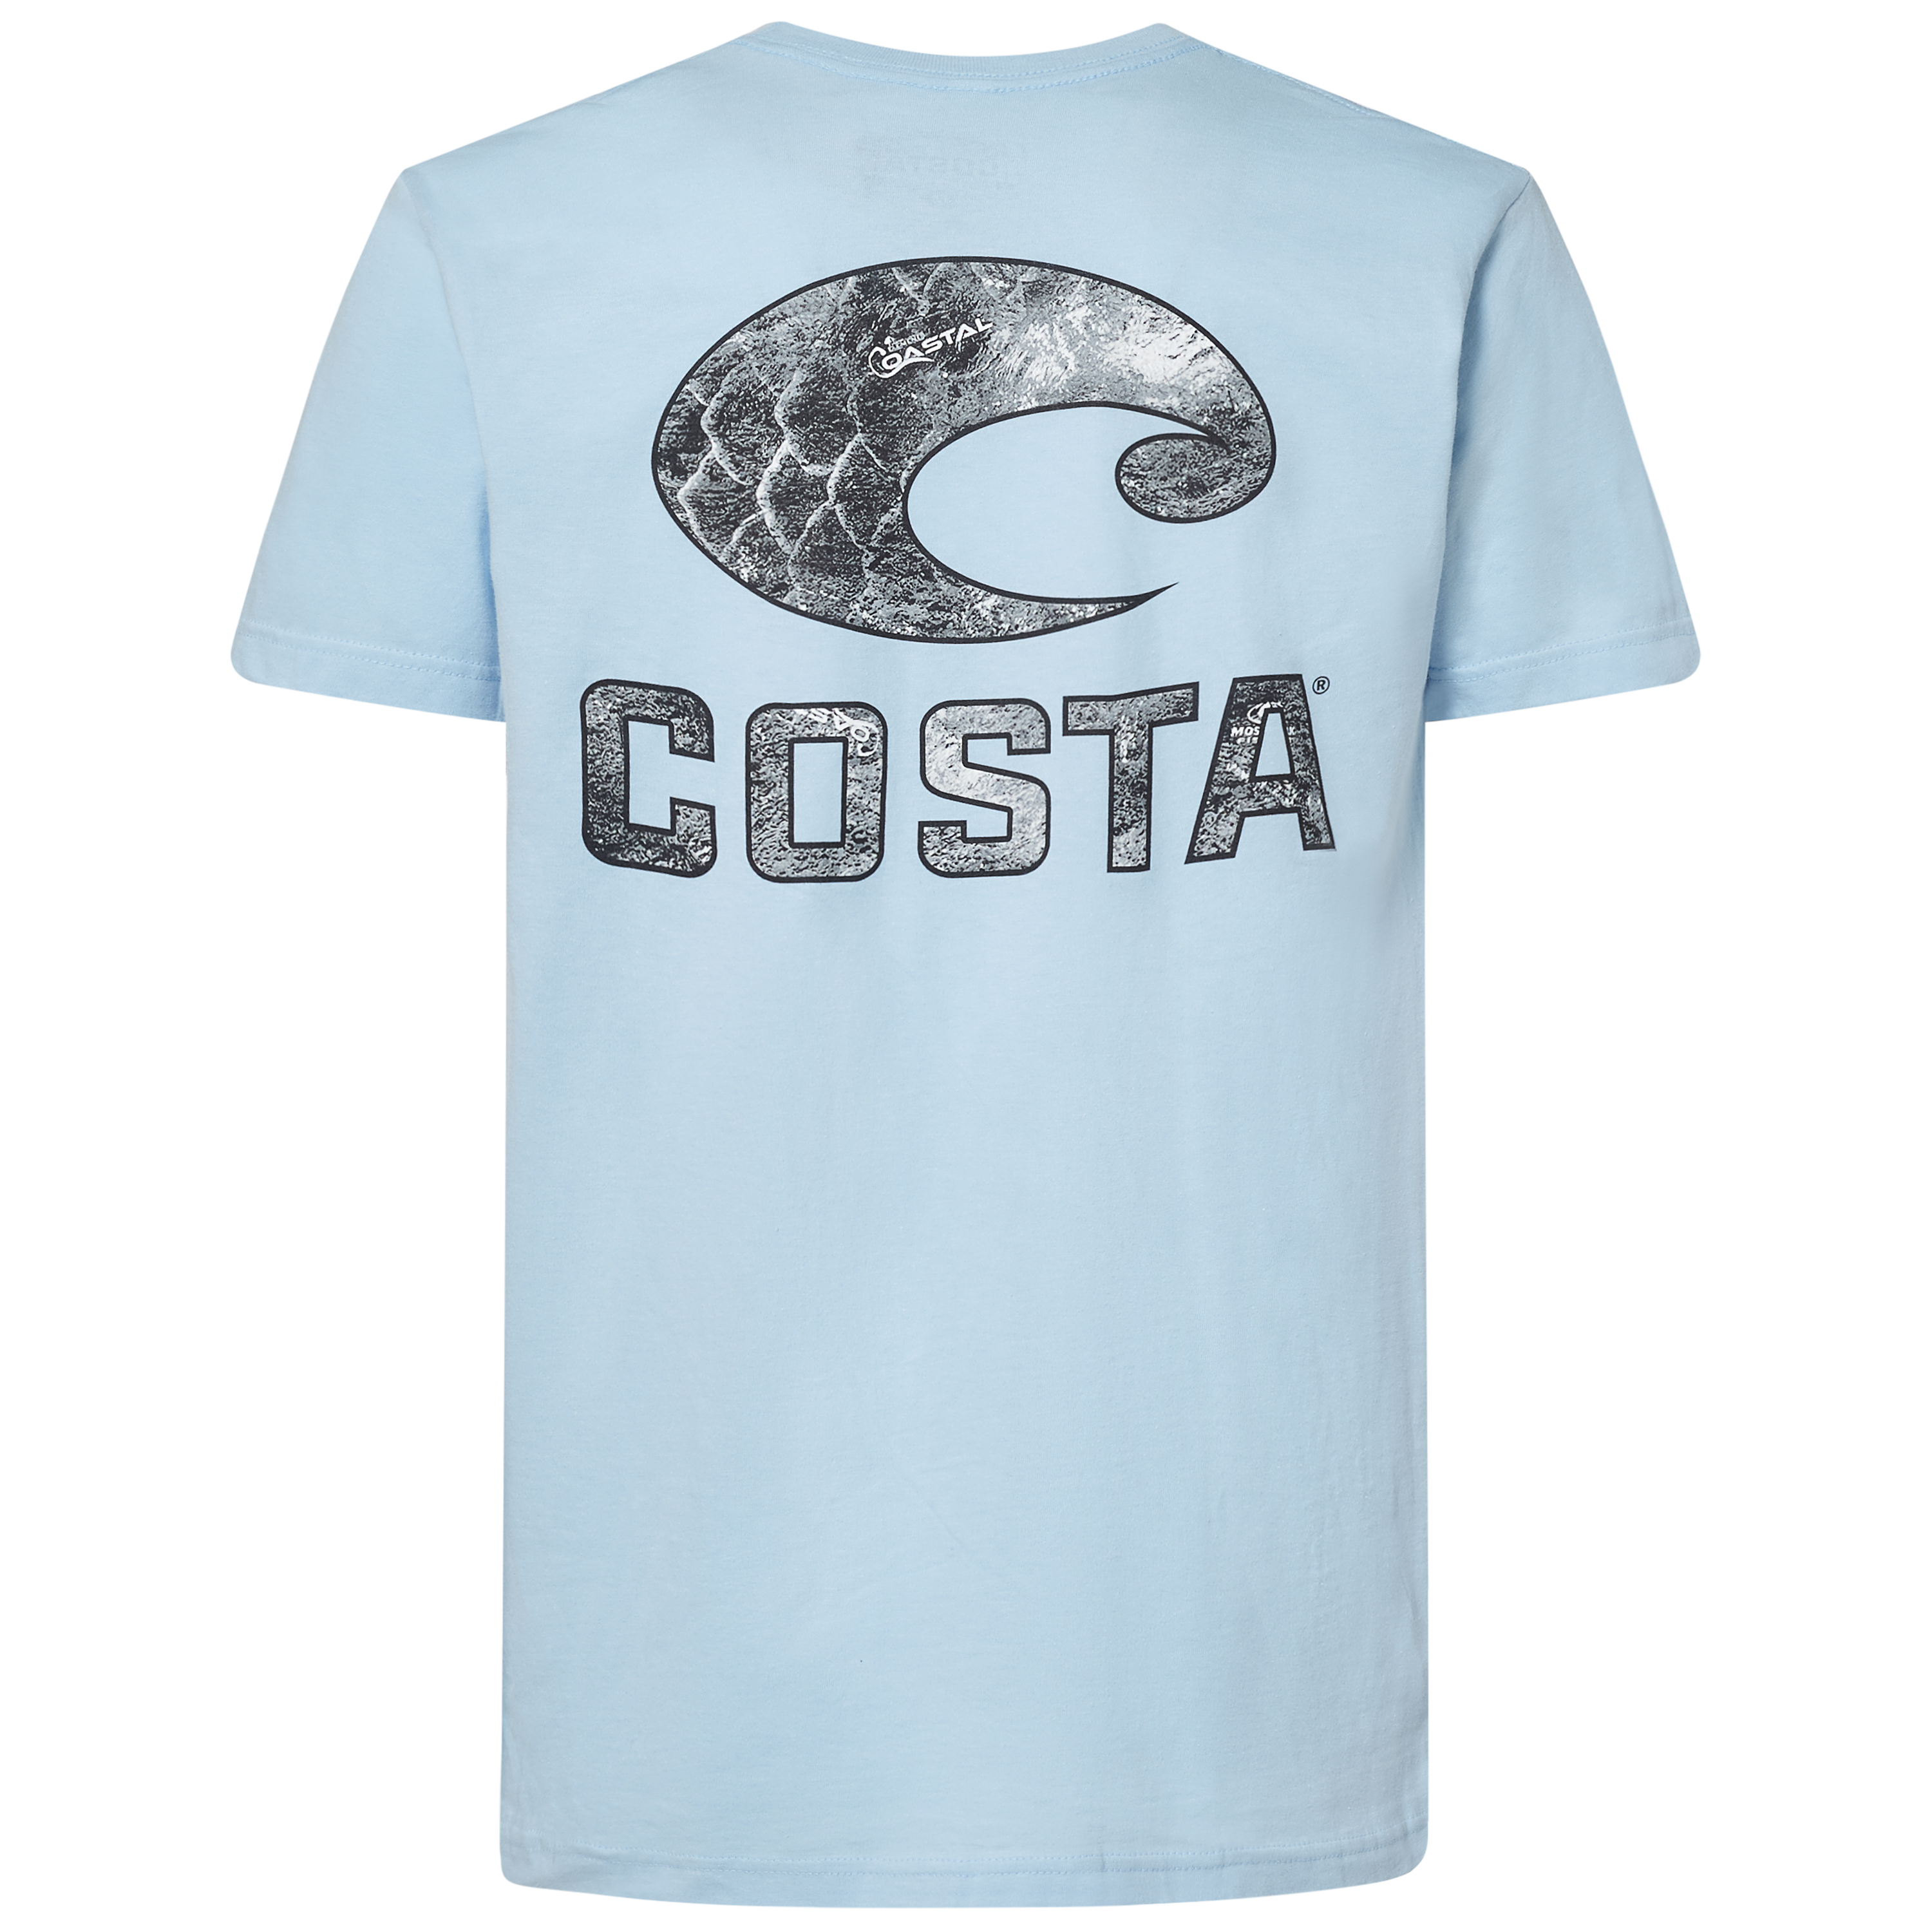 40% Off Costa Tech Mossy Oak Fishing Sun Shirt | Green | UPF 50